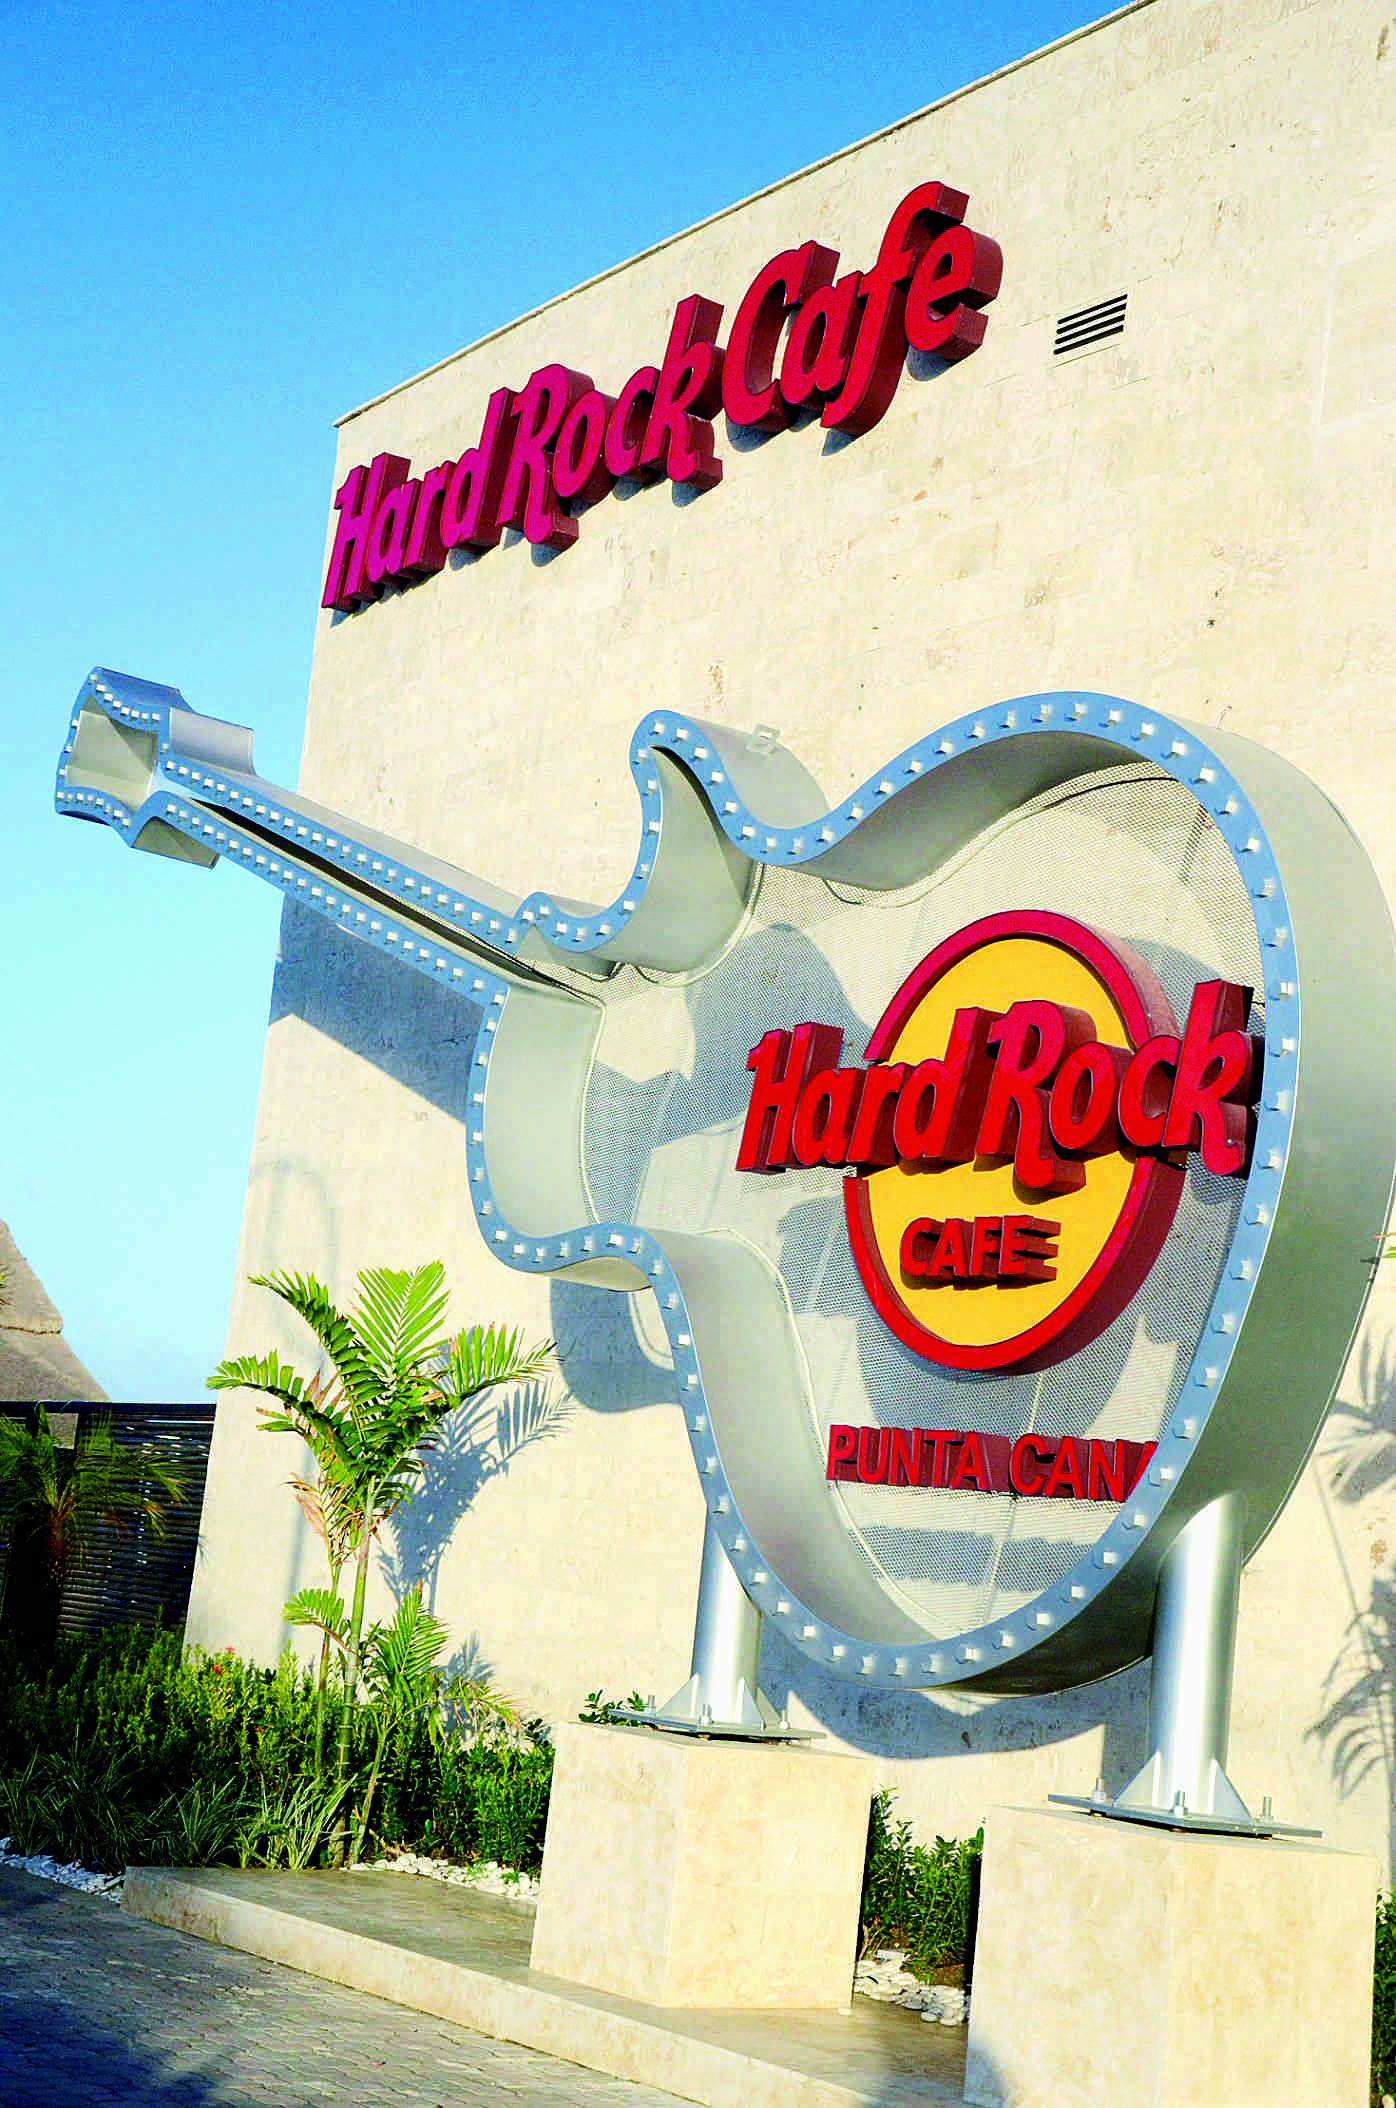 Hard Rock Café Punta Cana reabre con novedades Ritmo Social